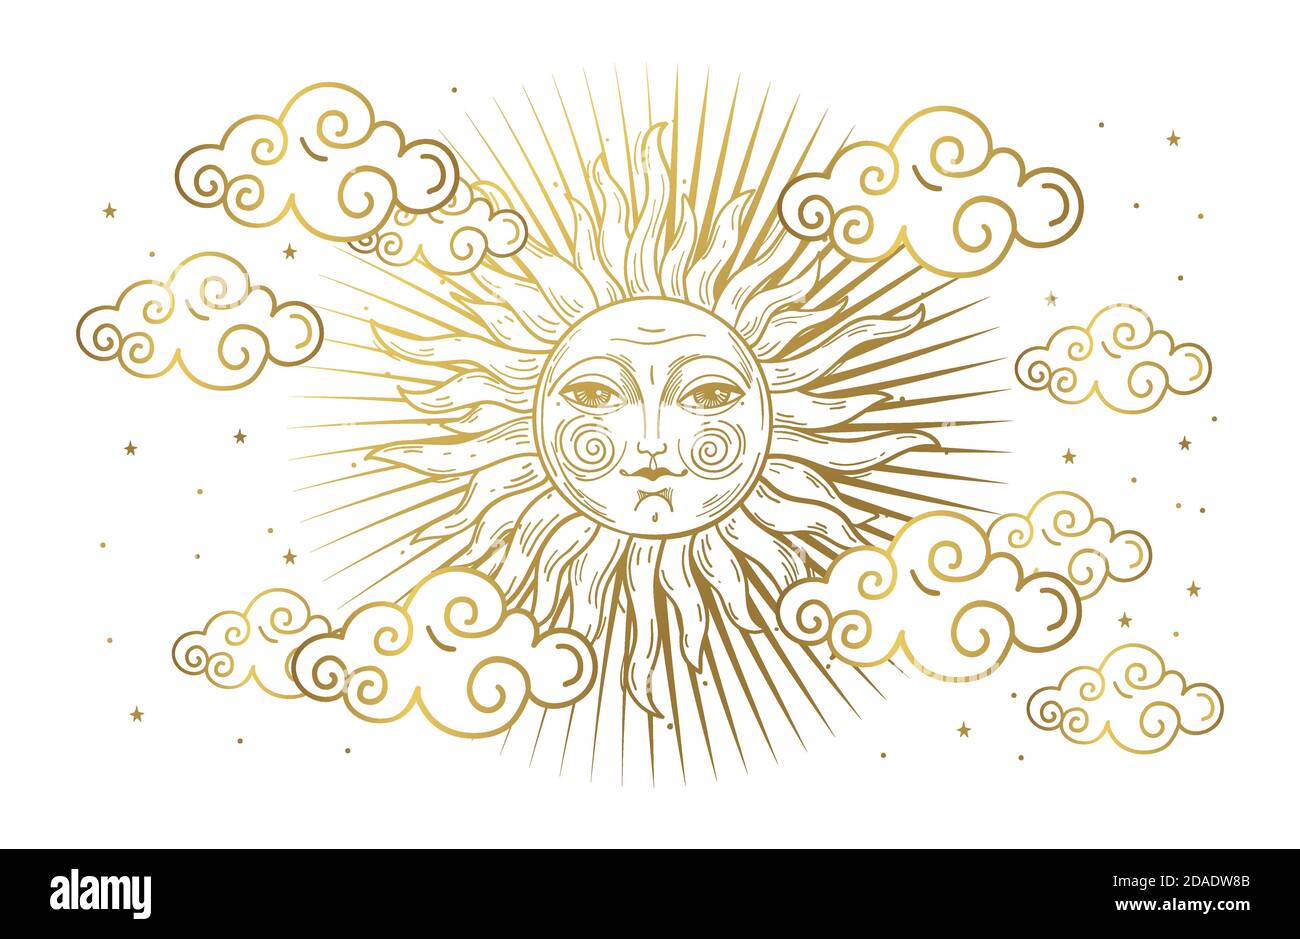 Ilustração artísticos, Sun, stars and crescent. Moon face.